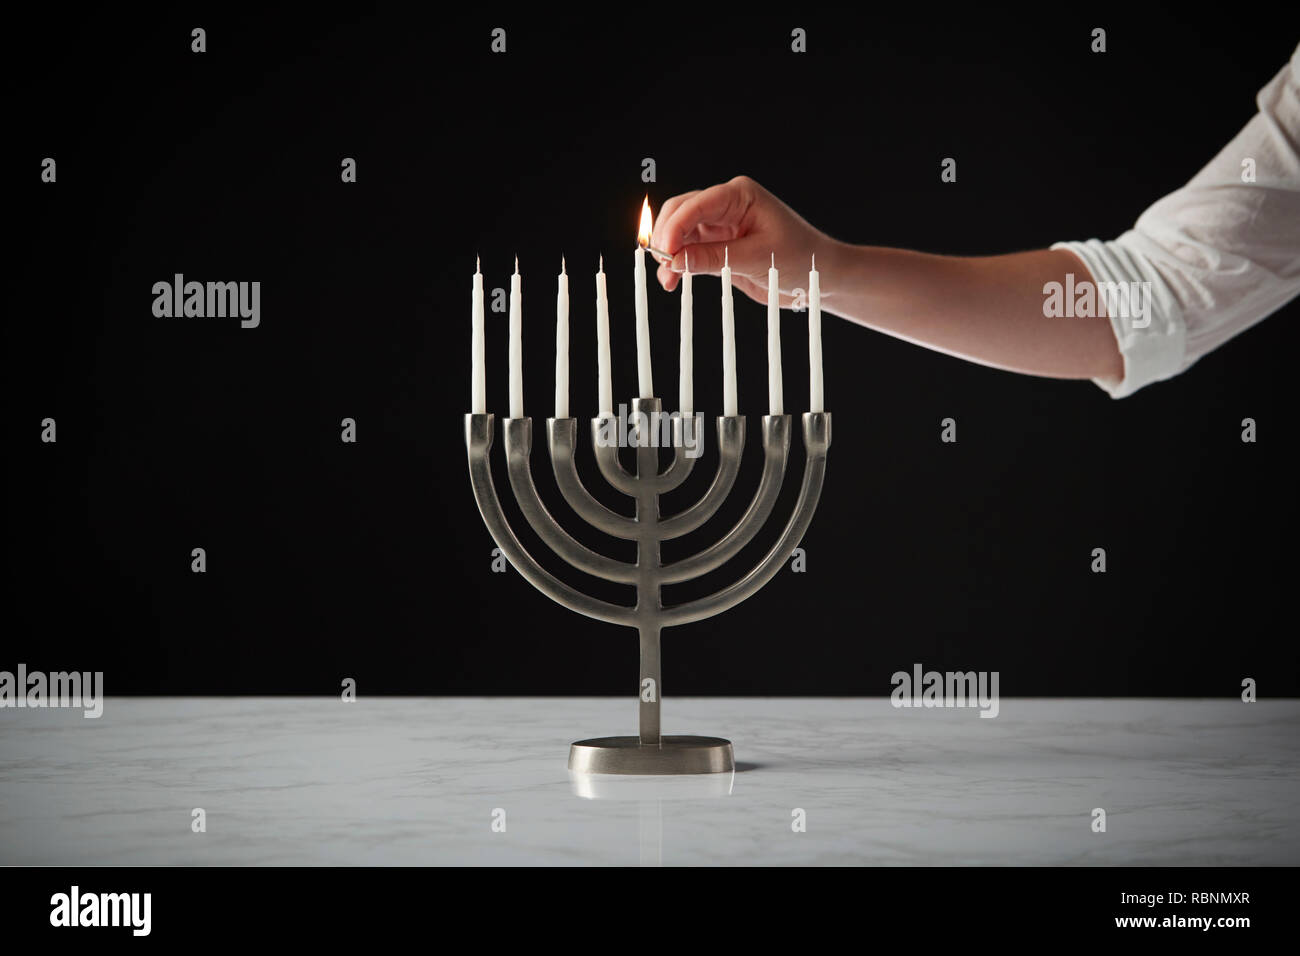 Beleuchtung Kerze auf Metall Hanukkah Menorah auf Marmor Oberfläche gegen Schwarz Studio Hintergrund Stockfoto